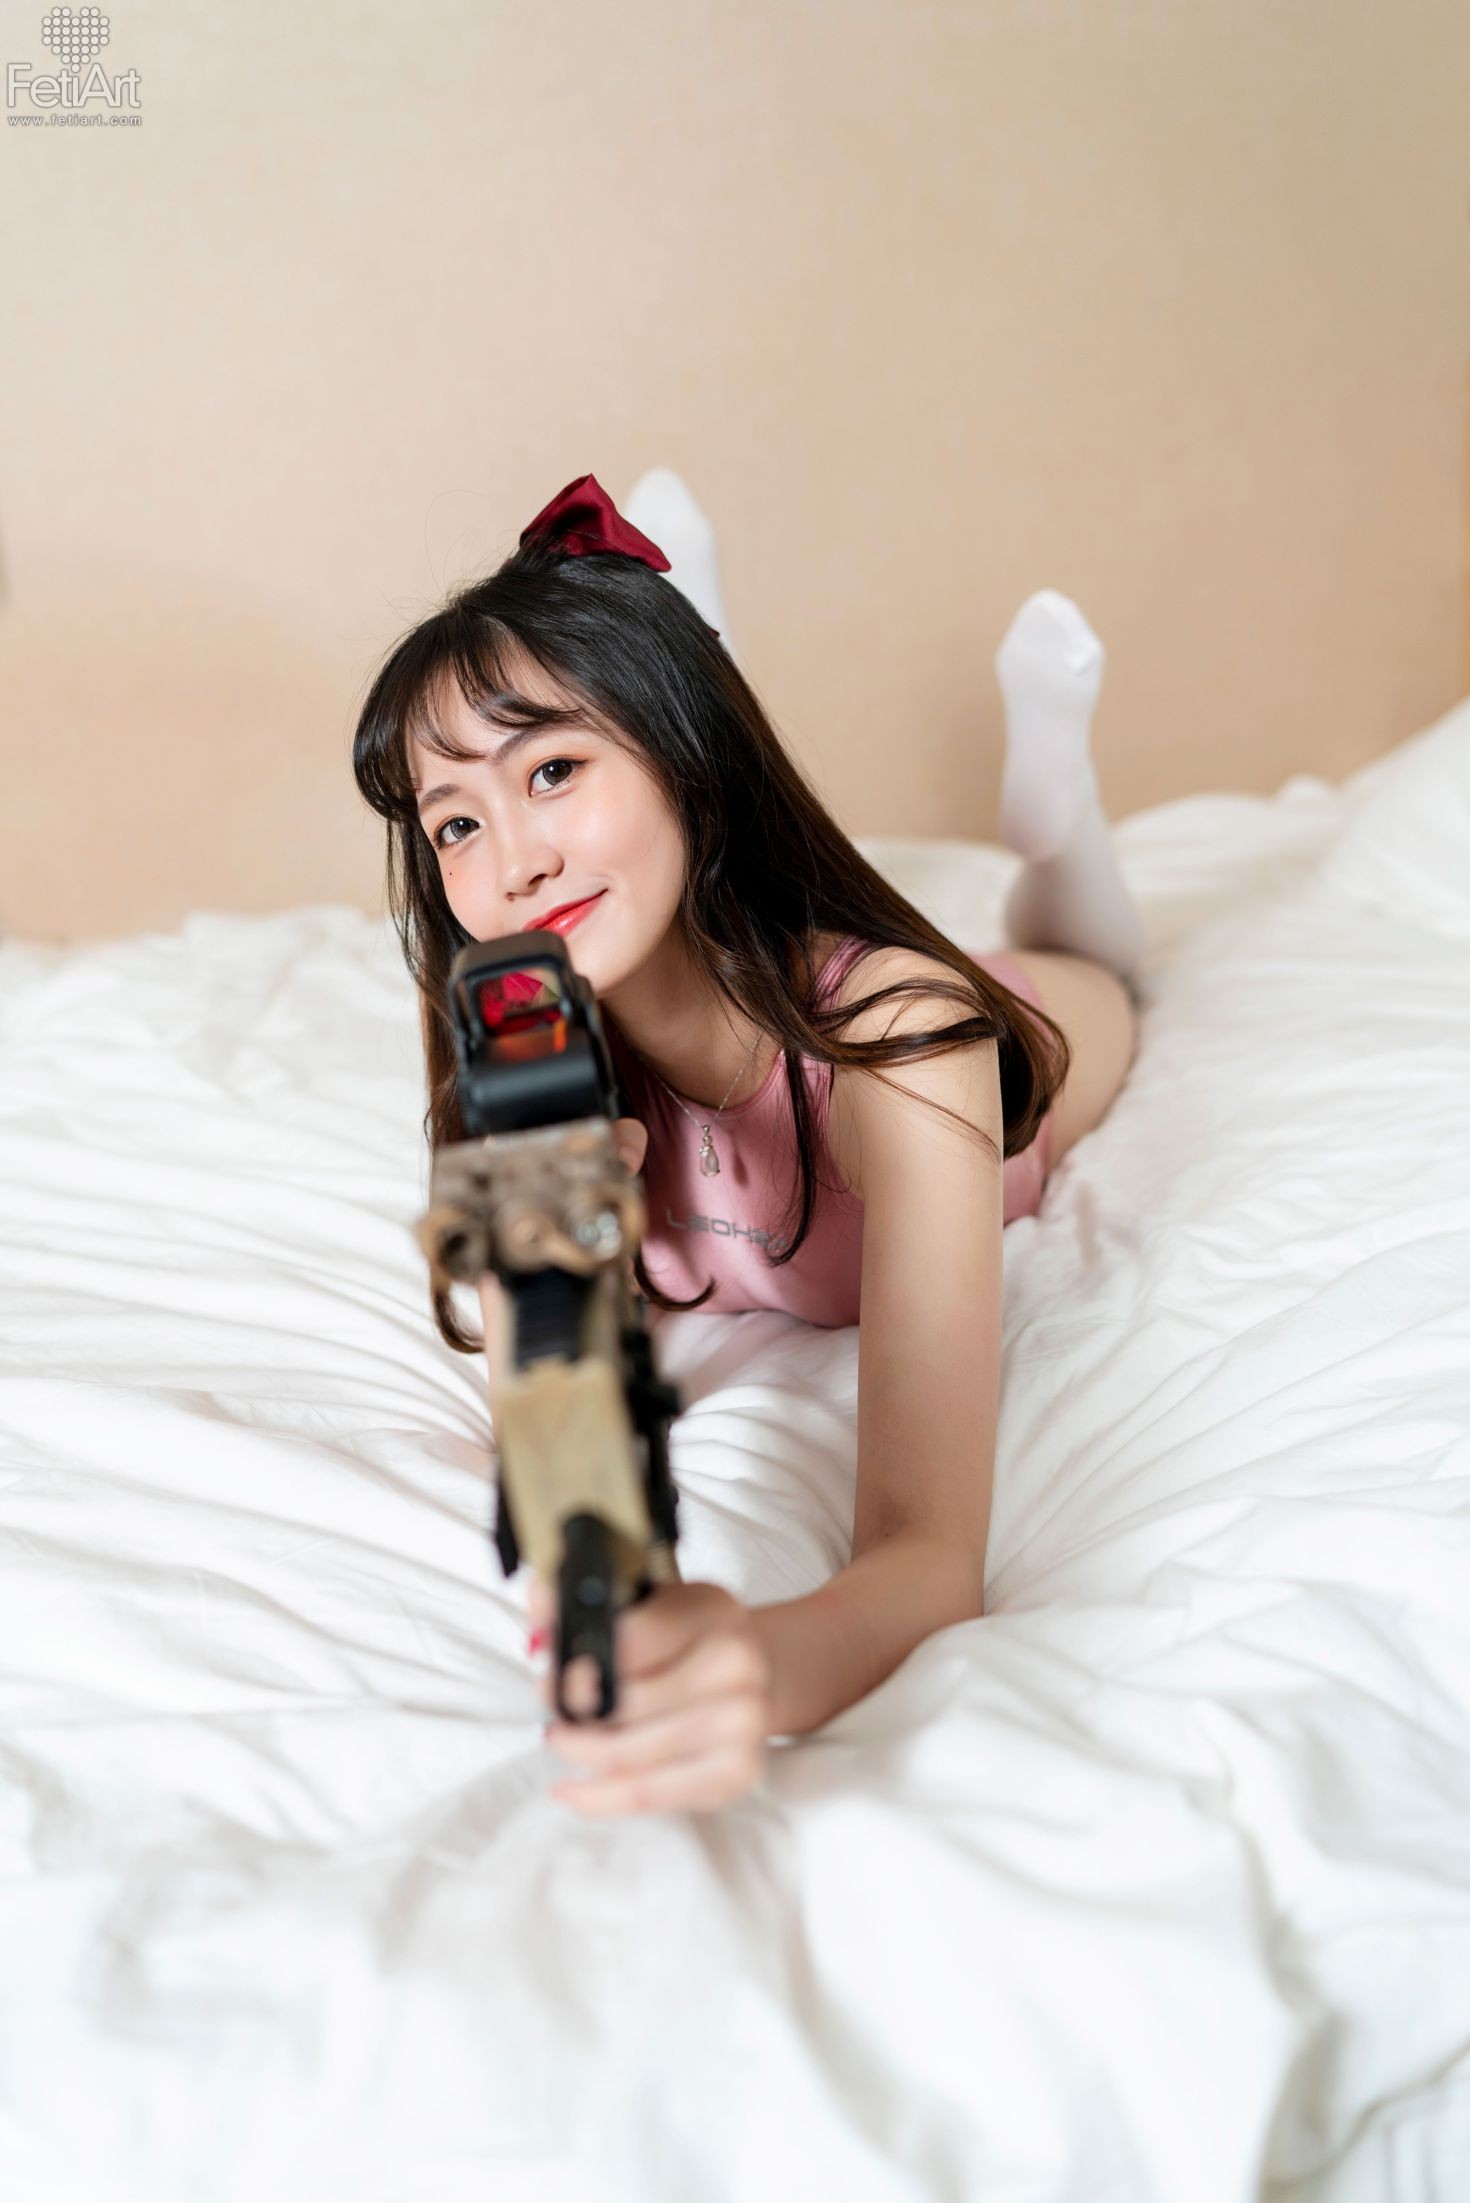 FetiArt尚物集 No.019 Gunslinger Girl MODEL Mmi (18)